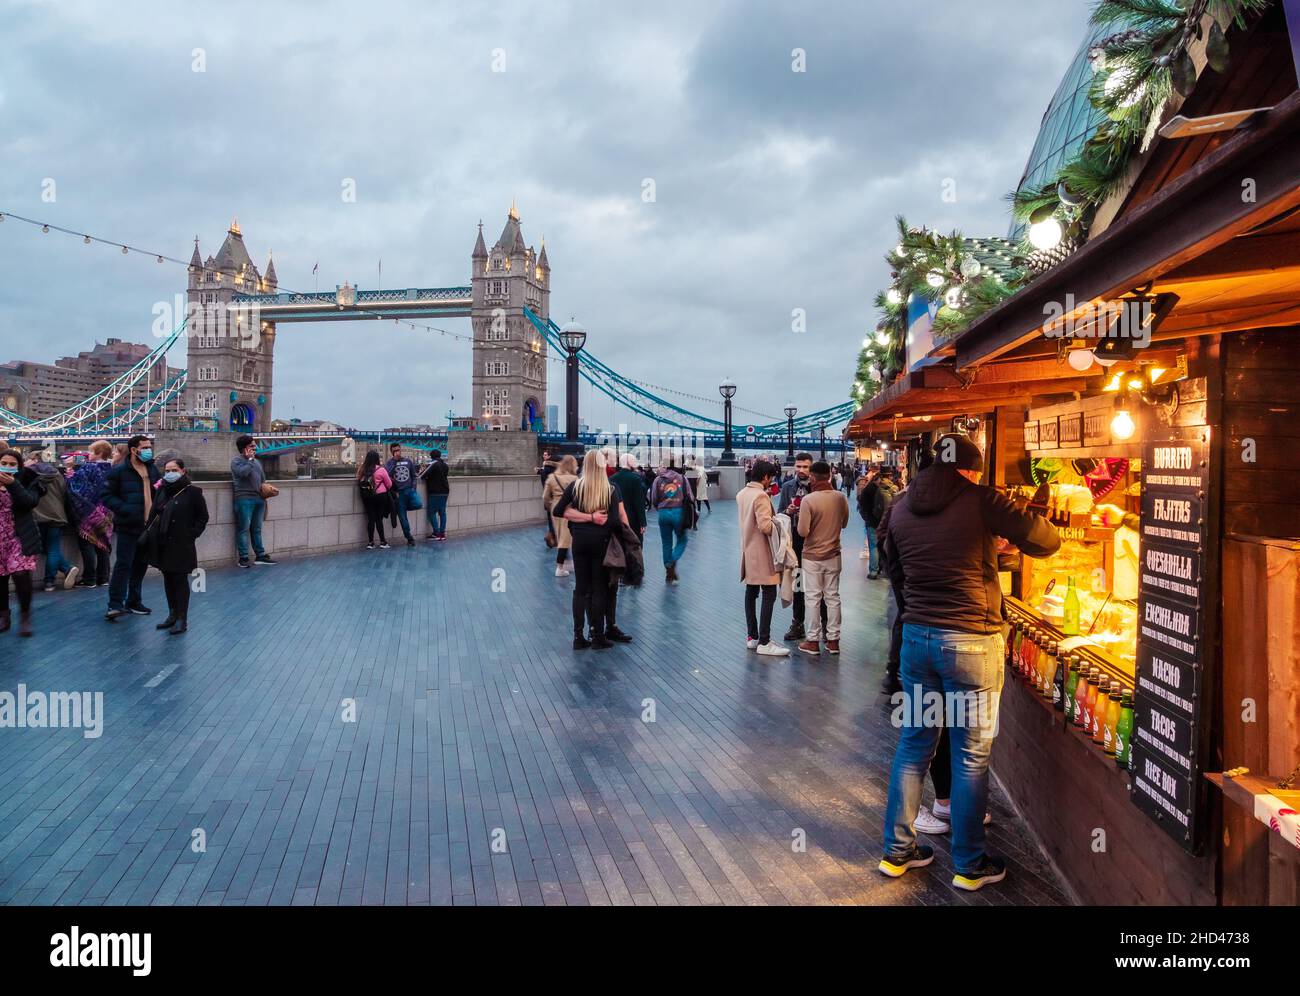 Londres, Inglaterra, Reino Unido - 31 de diciembre de 2021: Mercado de Navidad cerca del histórico Tower Bridge, vista desde el río más de Londres Foto de stock